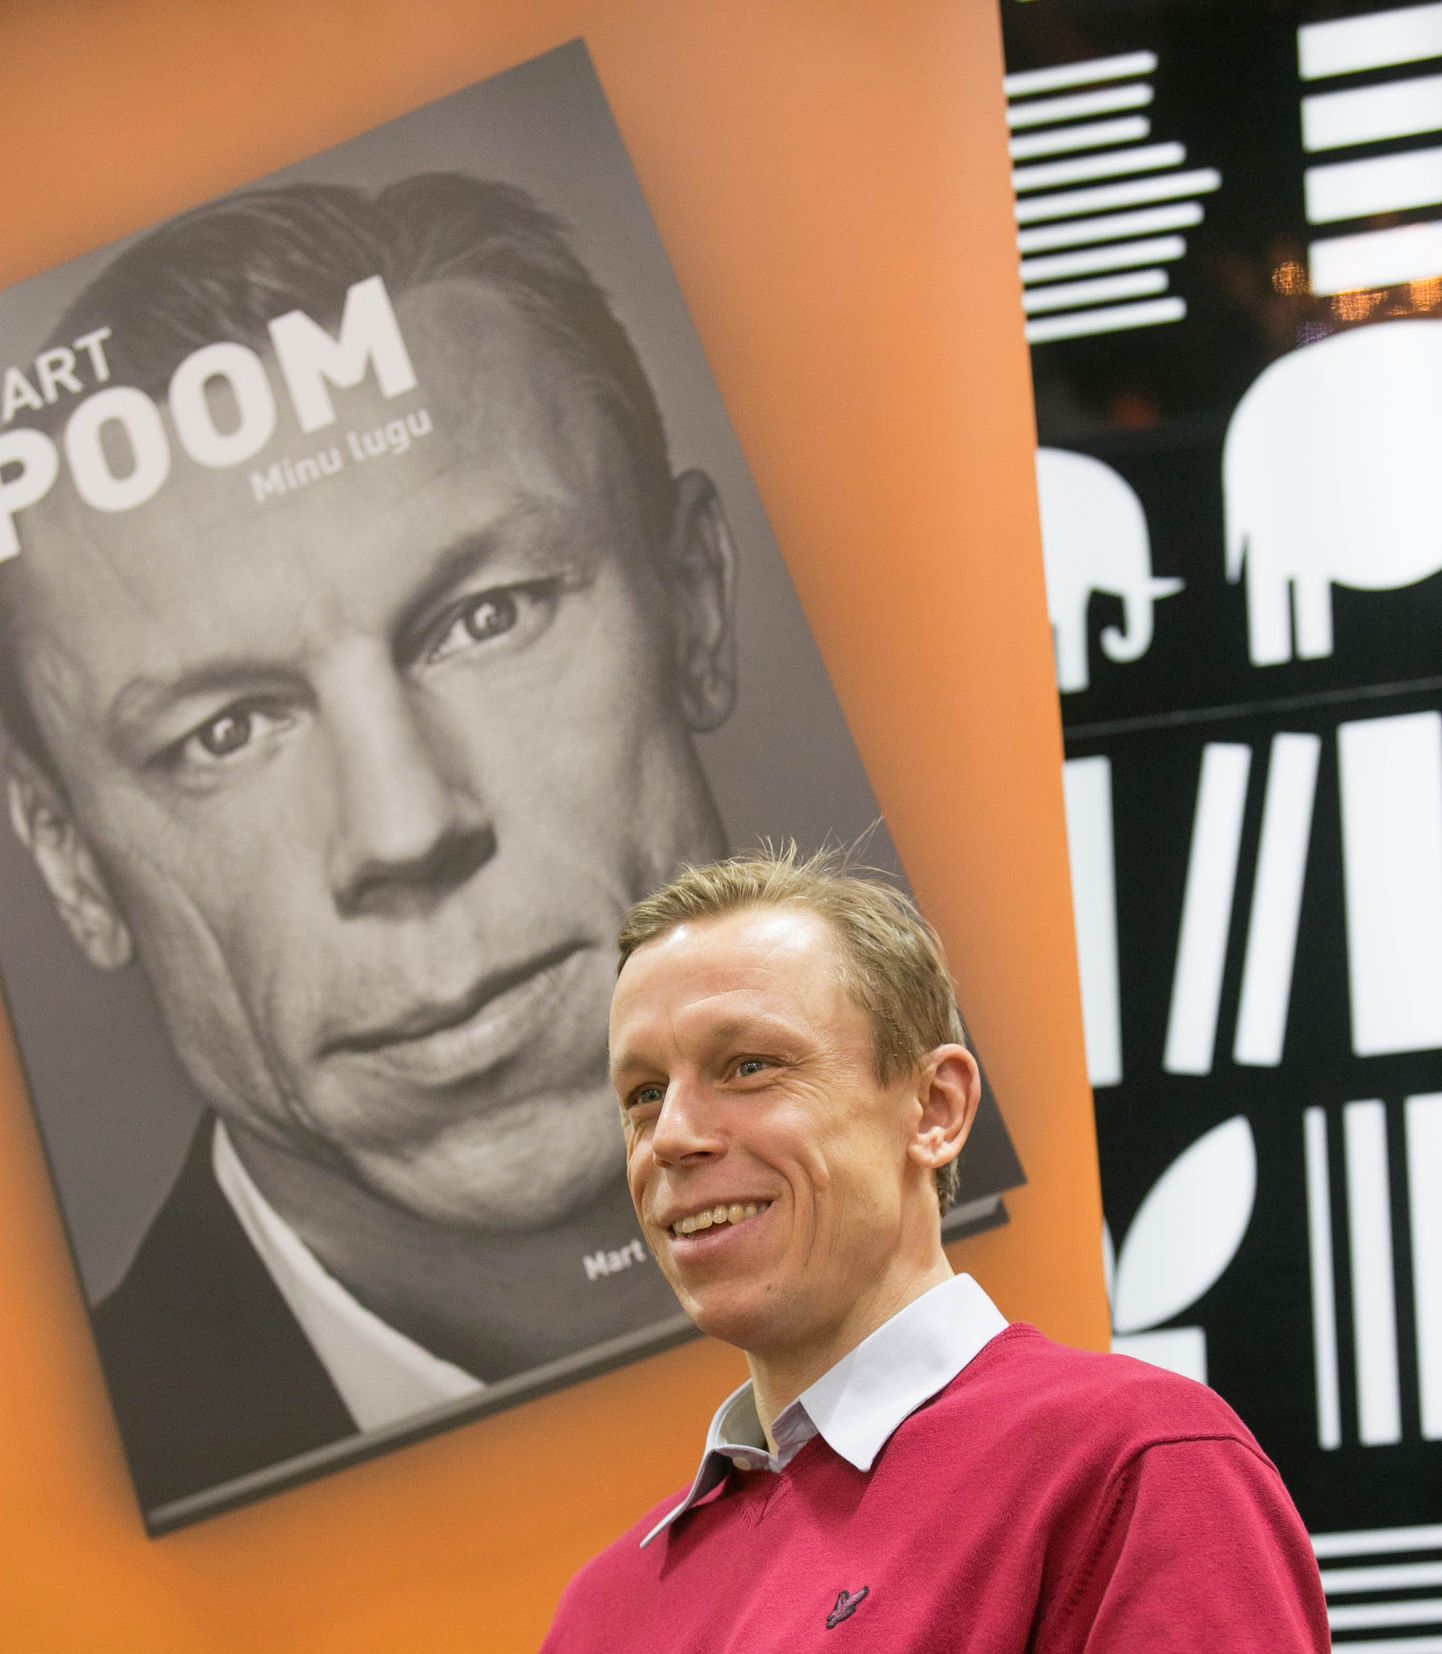 Eesti kuulsaim väravavaht Mart Poom esitles Kroonikeskuse Apollo raamatupoe ees raamatut "Minu lugu".